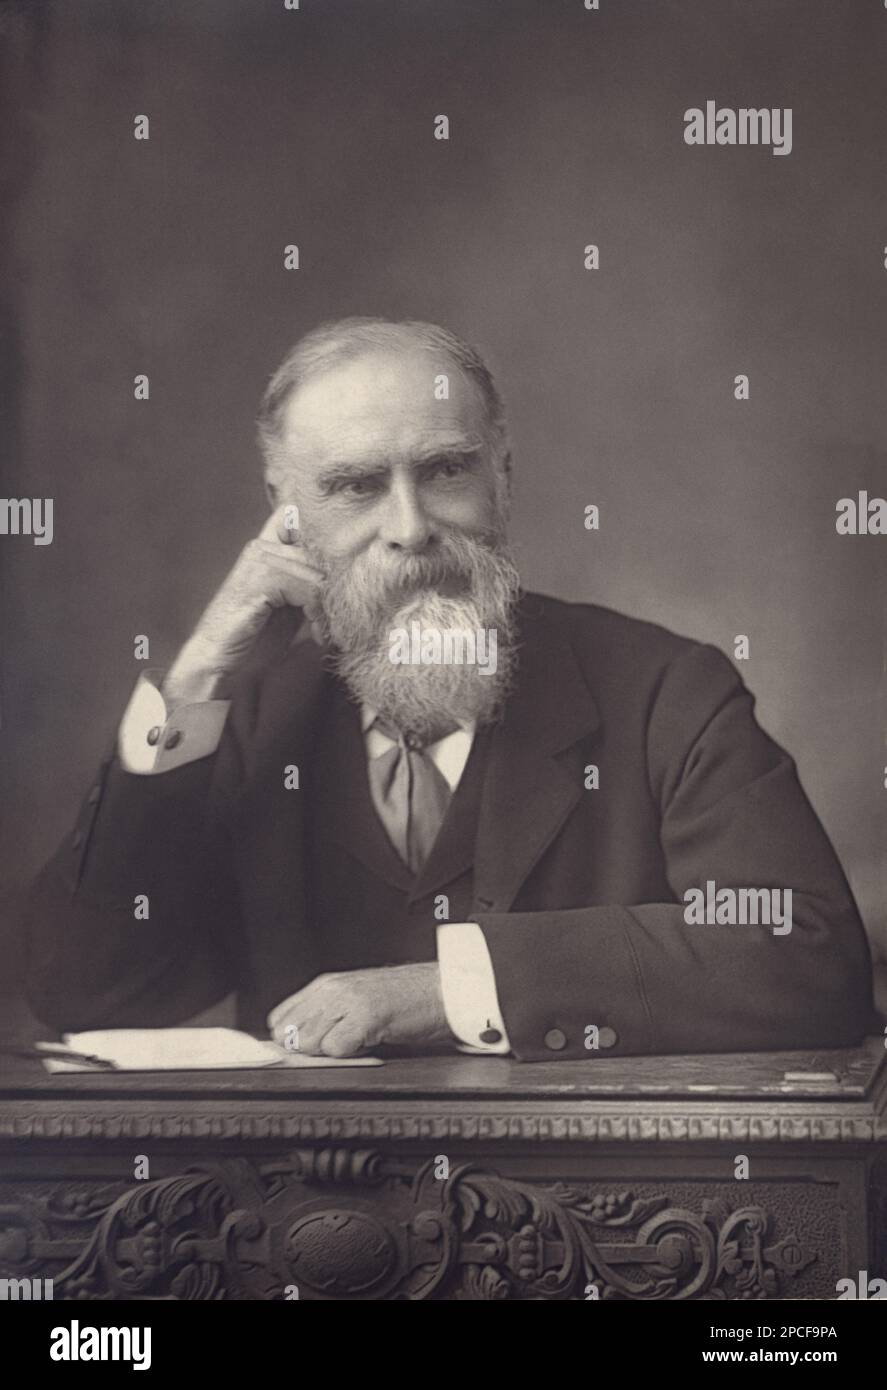 1895 ca : il politico britannico, il giurista e storico on. JAMES BRYCE 1st visconte Bryce di Dechmont ( 1838 - 1922 ). Foto di W. & Downey , Londra - POLITICO - POLITICA - POLITICA - Gran Bretagna - foto storiche - foto storica - ritratto - ritratto - barba - barba - barba - cravatta - uomo anziano - scrivania - scribia - pensatore - pensatore STORICO - GIURISTA - GIURISPRUDENZA - AVVOCATO - NOBILI - Nobiltà INGLESE - nobiltà britannica ---- Archivio GBB Foto Stock